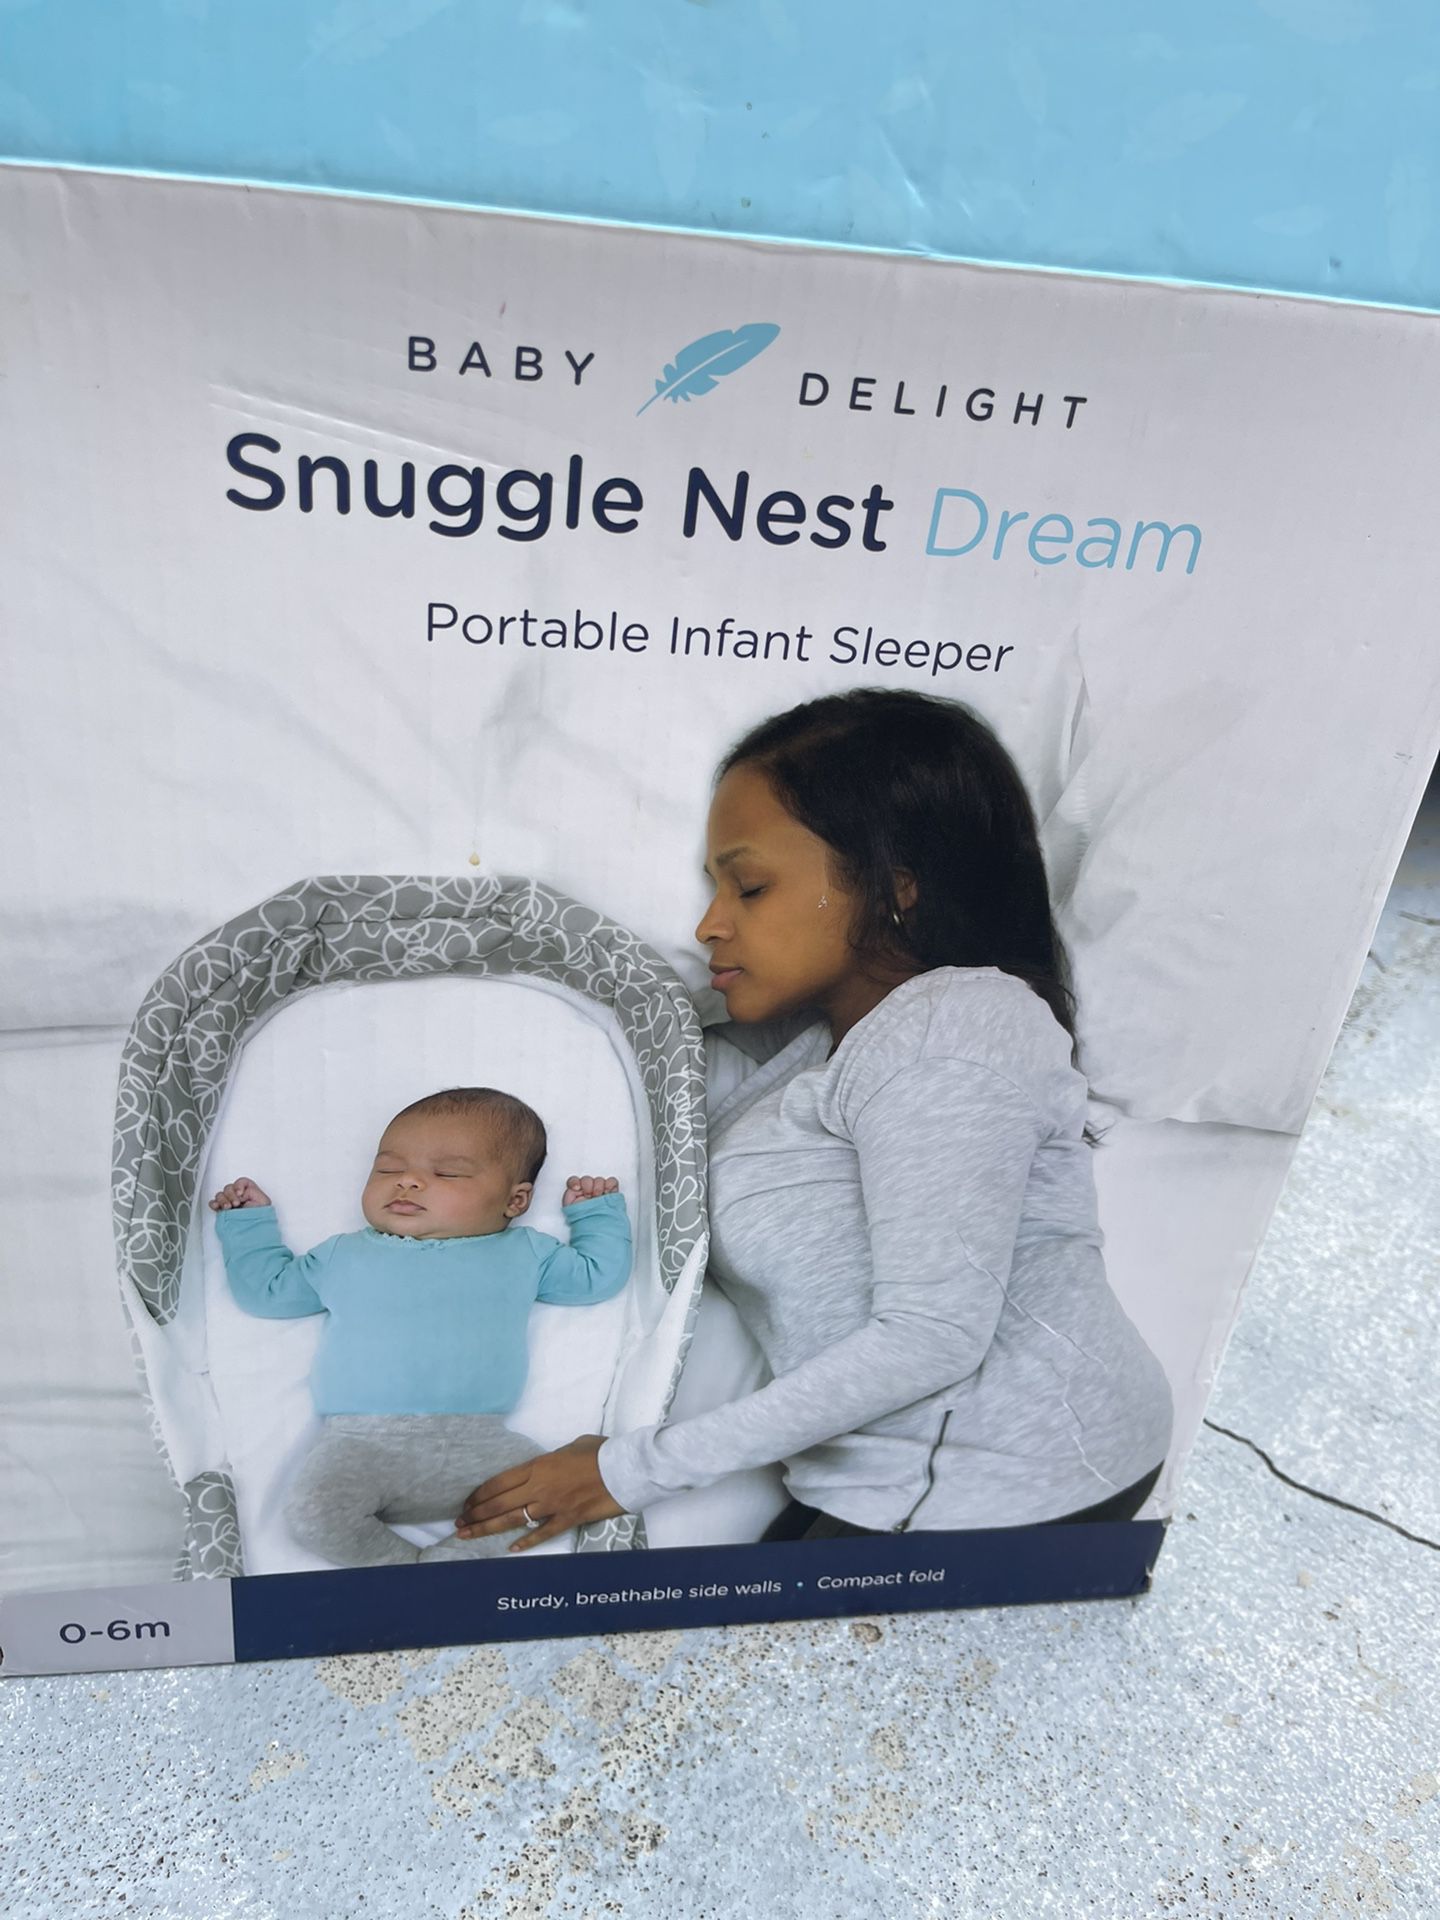 Portable Infant Sleeper: Snuggle Nest Dream